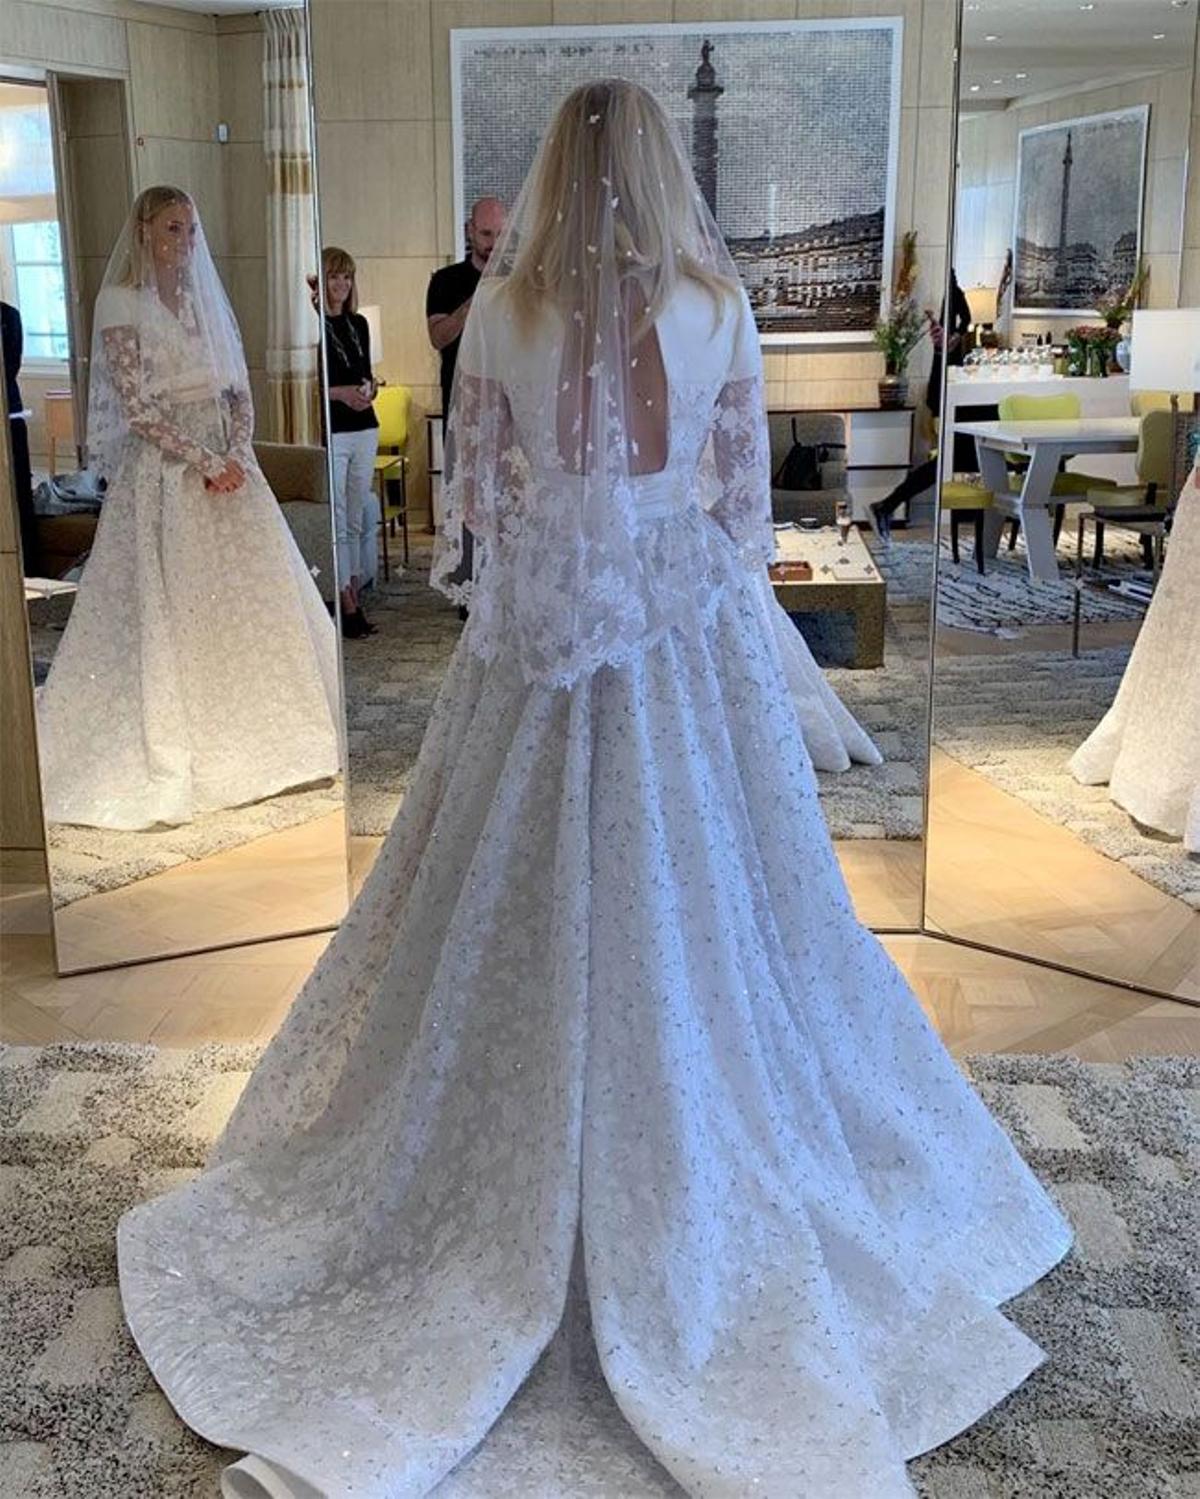 El vestido de novia de Sophie Turner creado por Nicholas Ghesquière, director artístico de Louis Vuitton